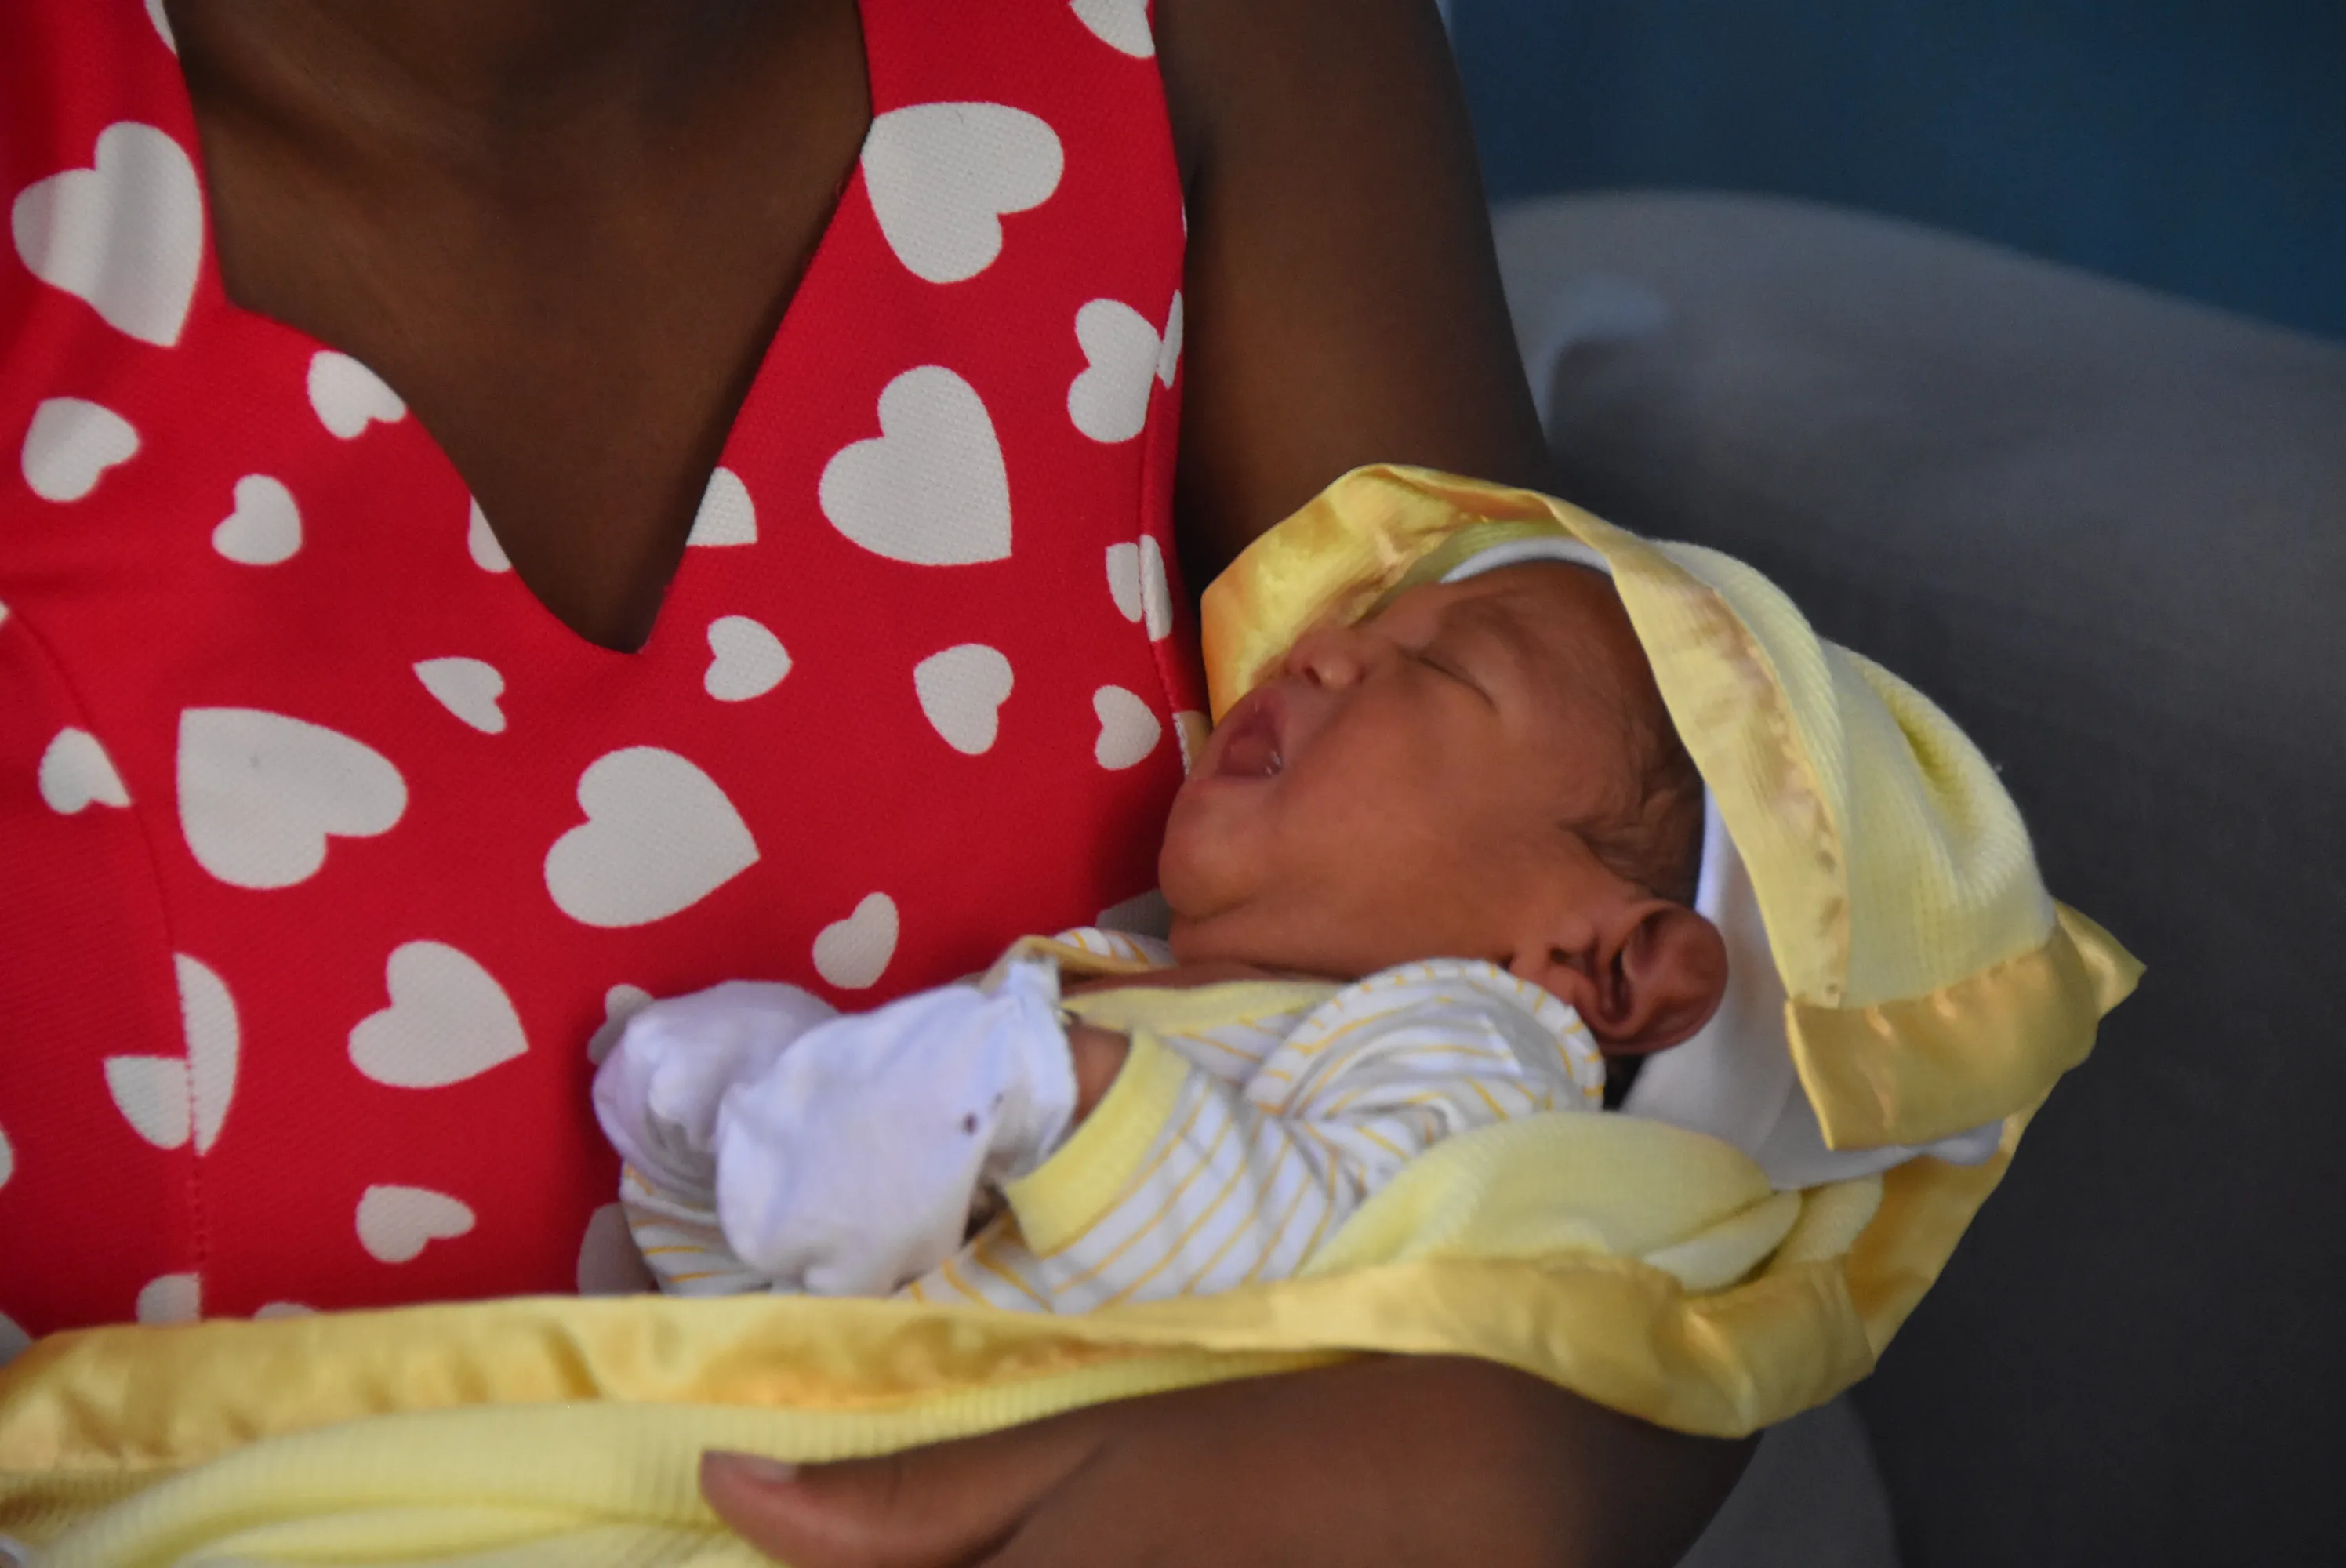 Madre de bebé Damián: “quiero que sea un gran doctor”